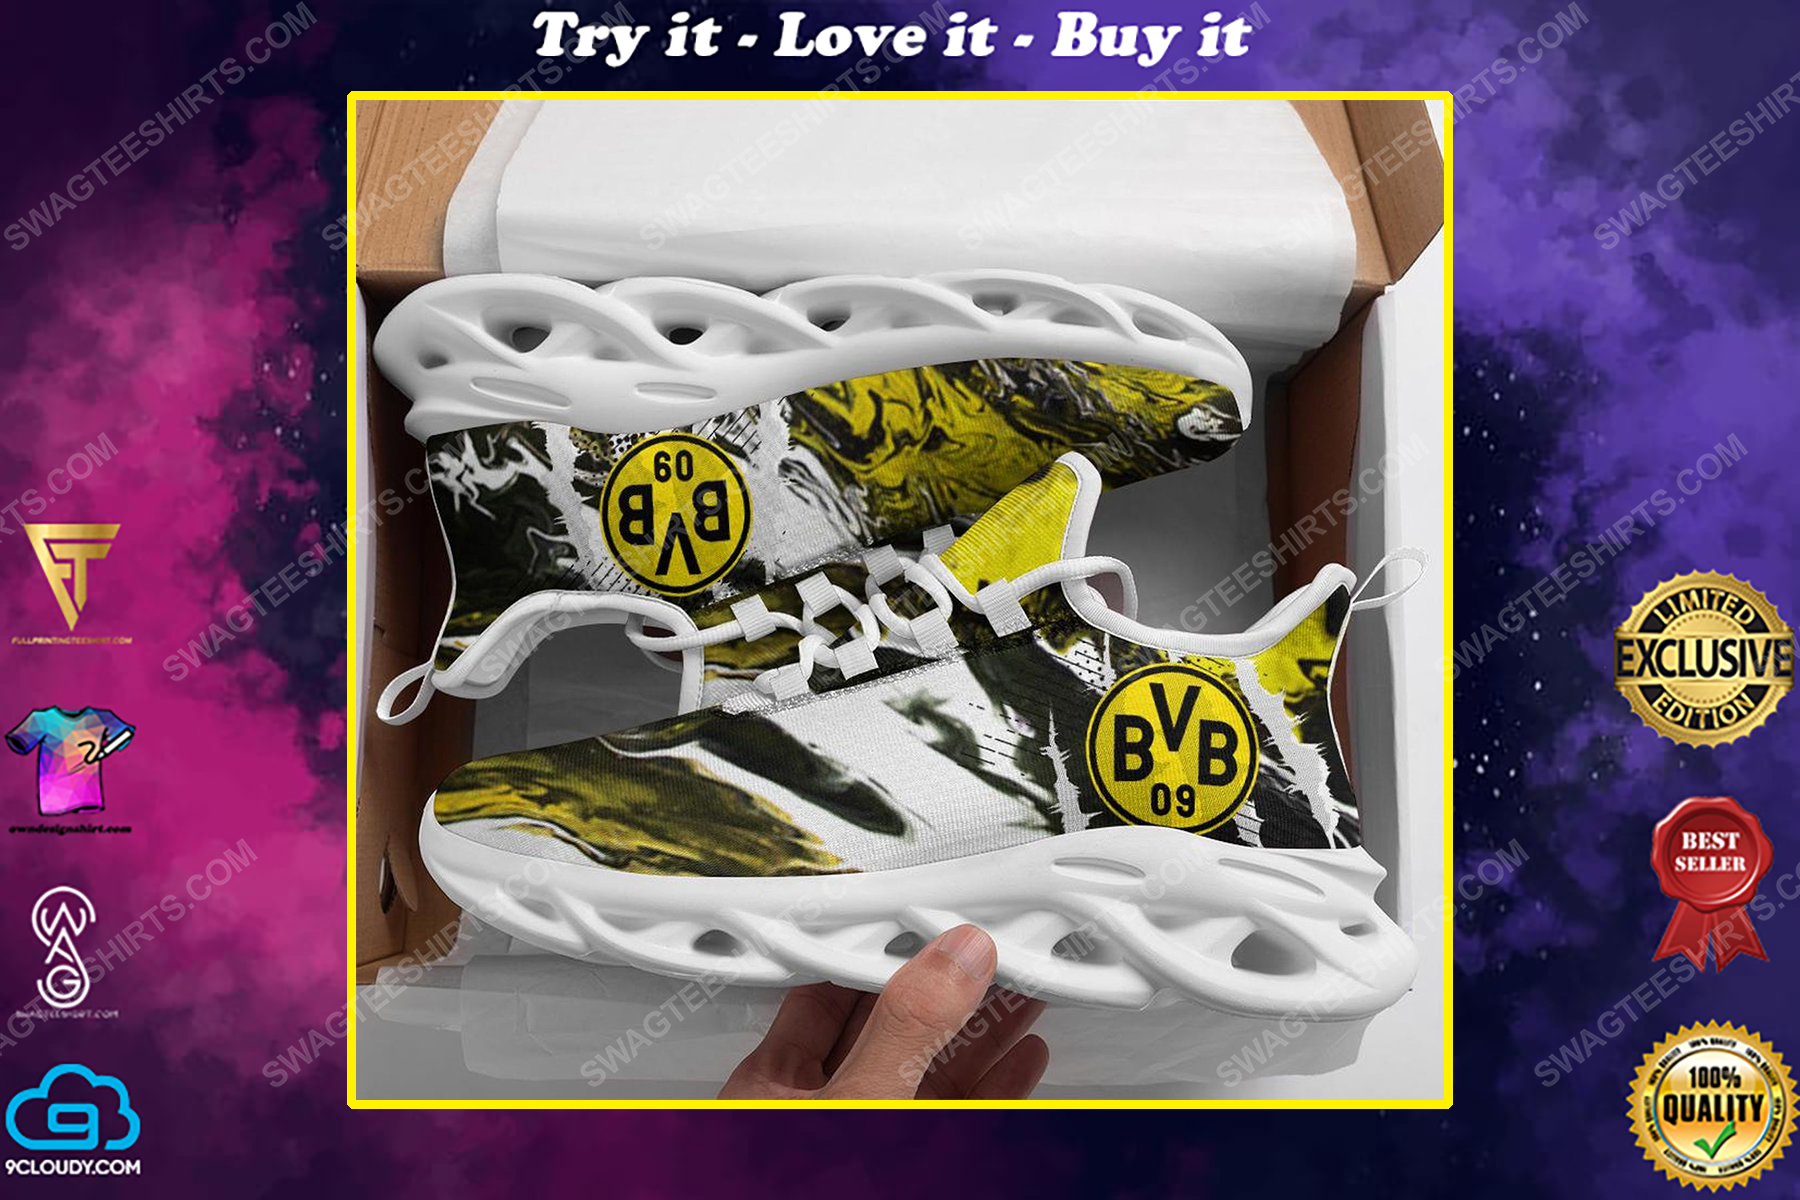 BV borussia dortmund football club max soul shoes